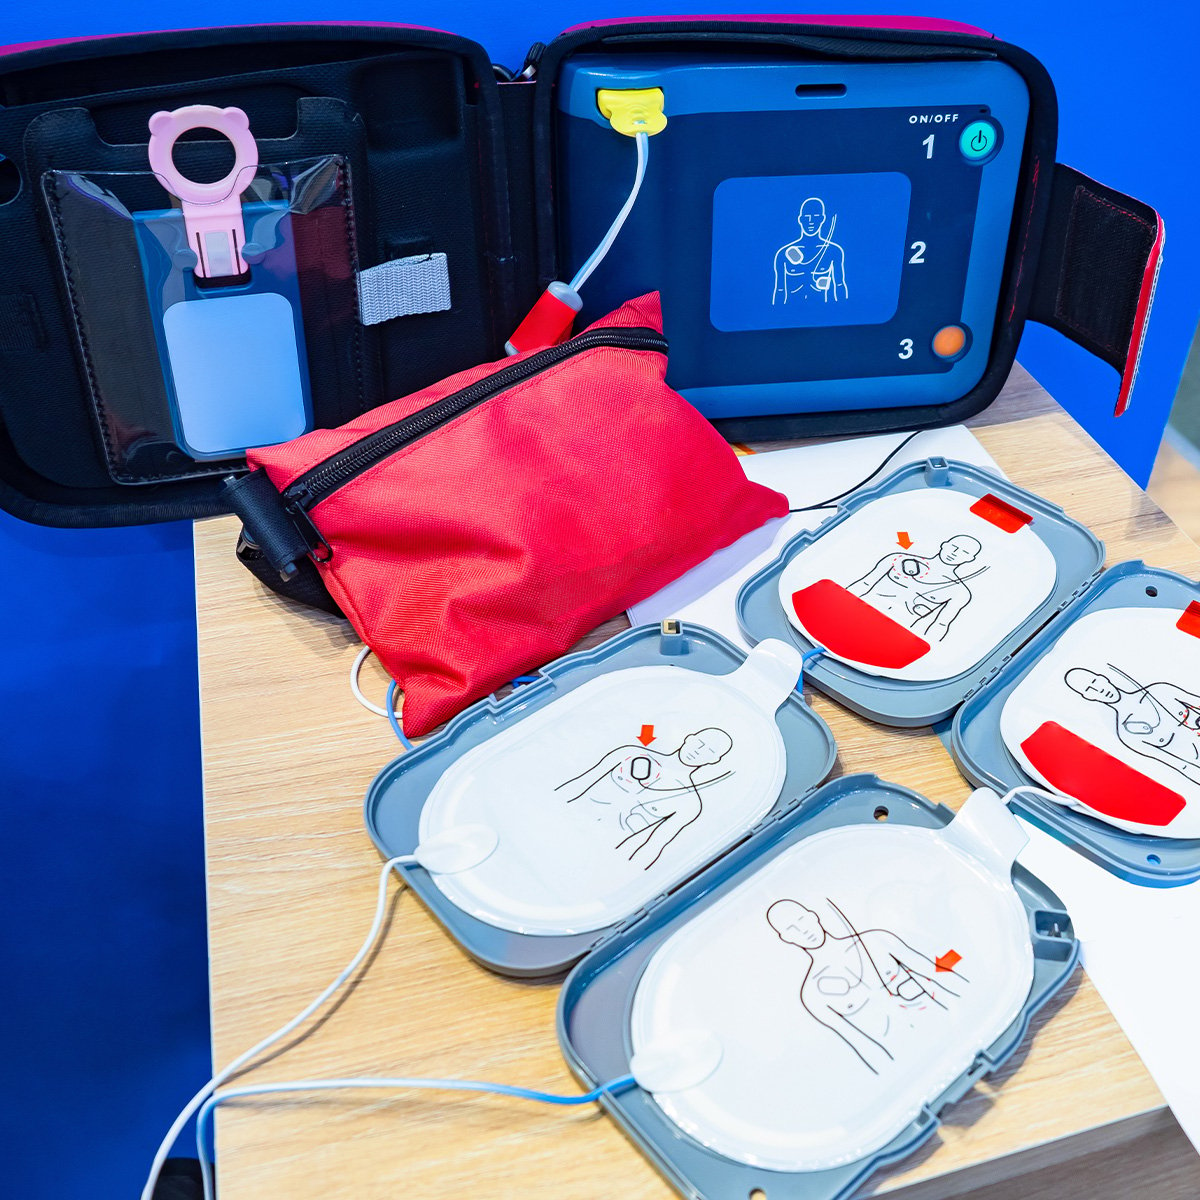 open-defibrillator-kit-on-table